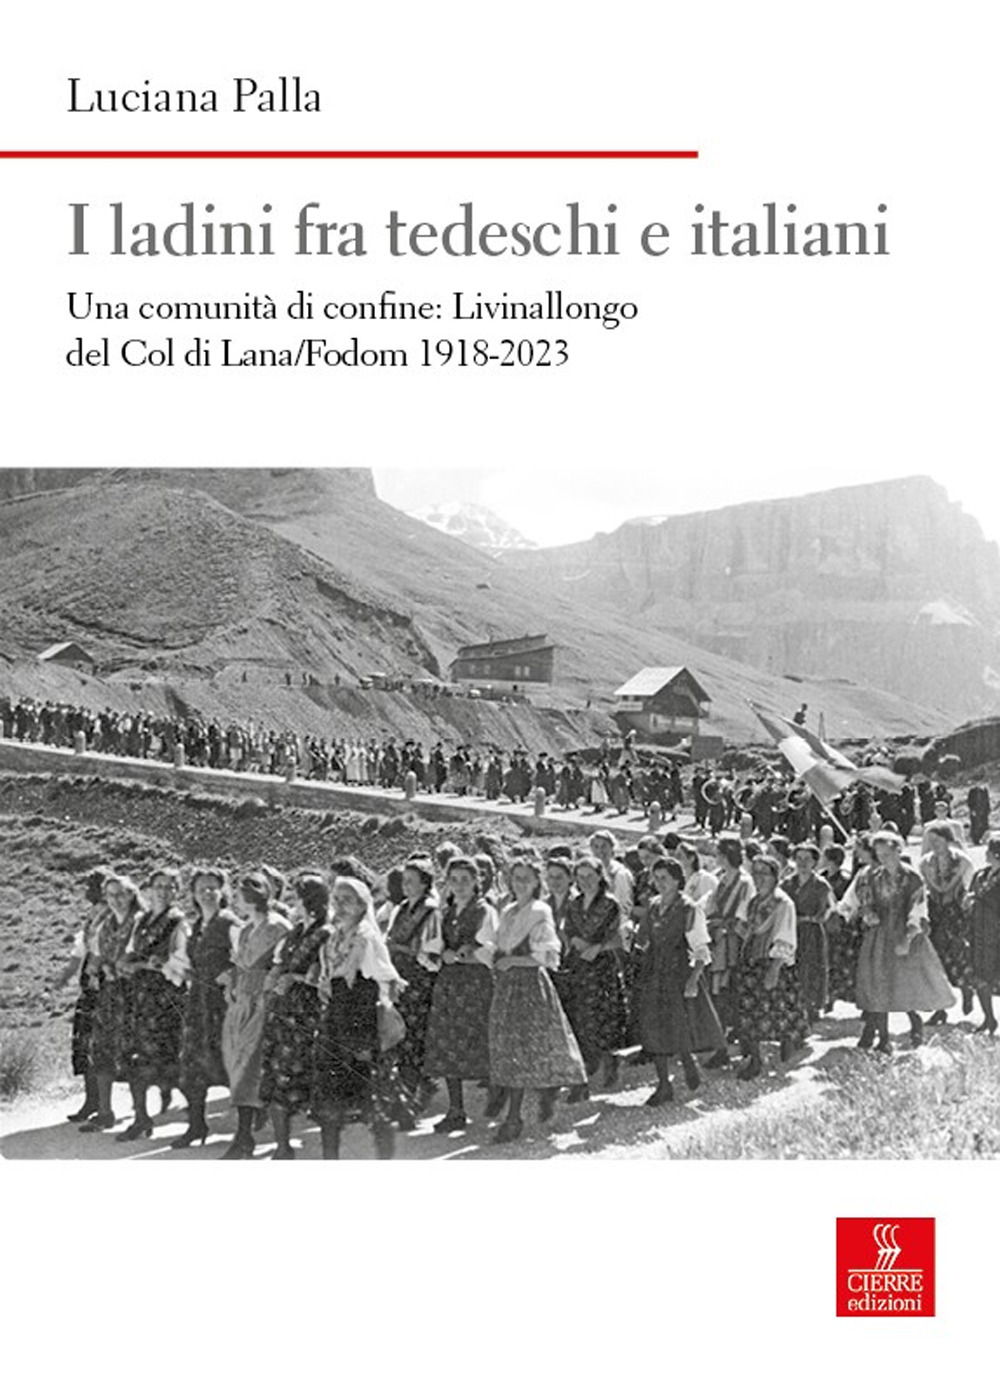 I ladini fra tedeschi e italiani. Una comunità di confine: Livinallongo del Col di Lana/Fodom 1918-2023